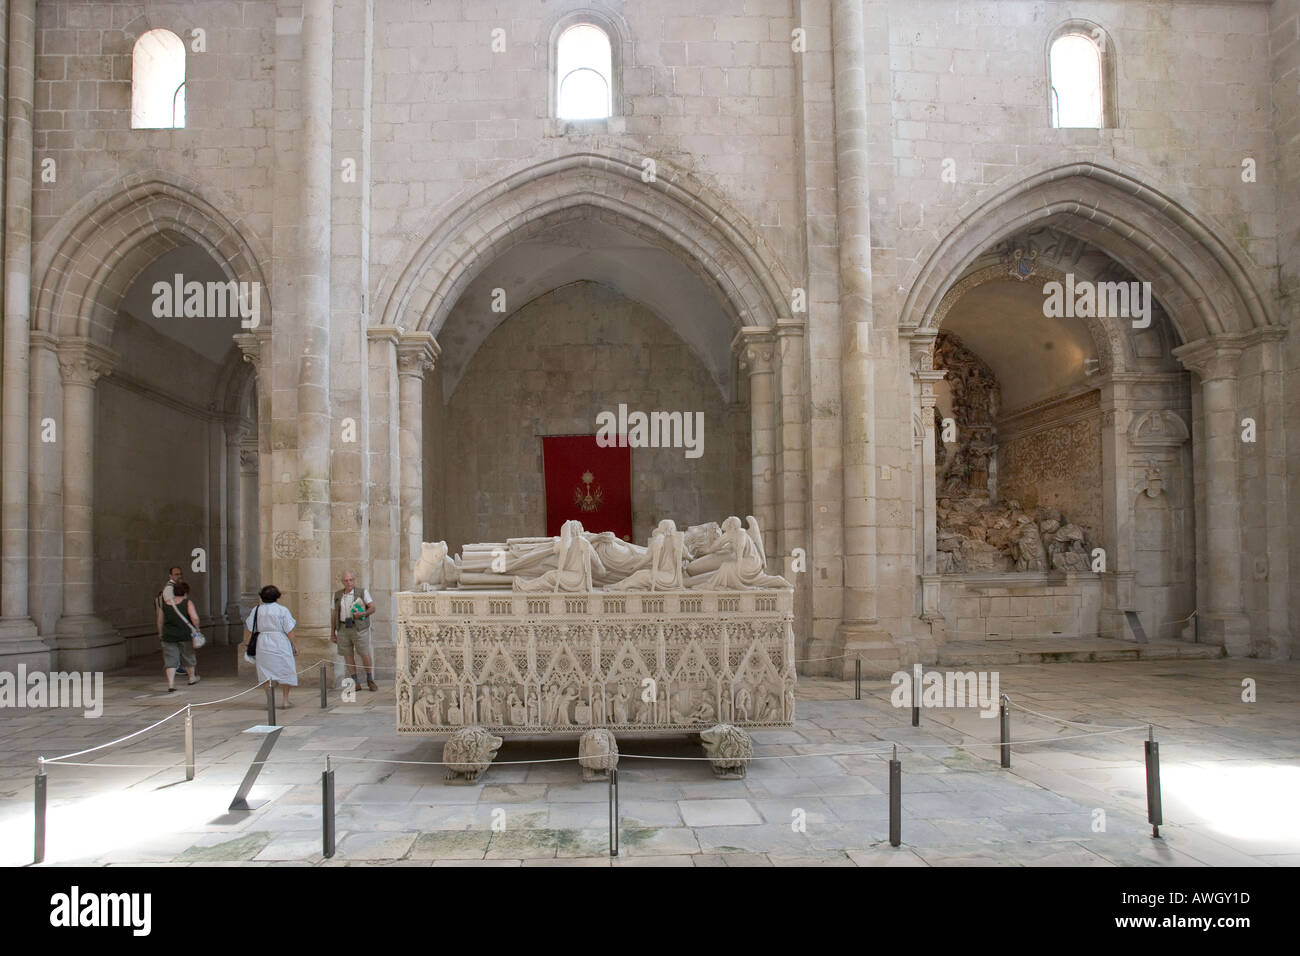 Das Innere des Klosters Alcobaca Portugal Touristen auf der Suche am Grab des Dom Pedro zeigen. Stockfoto